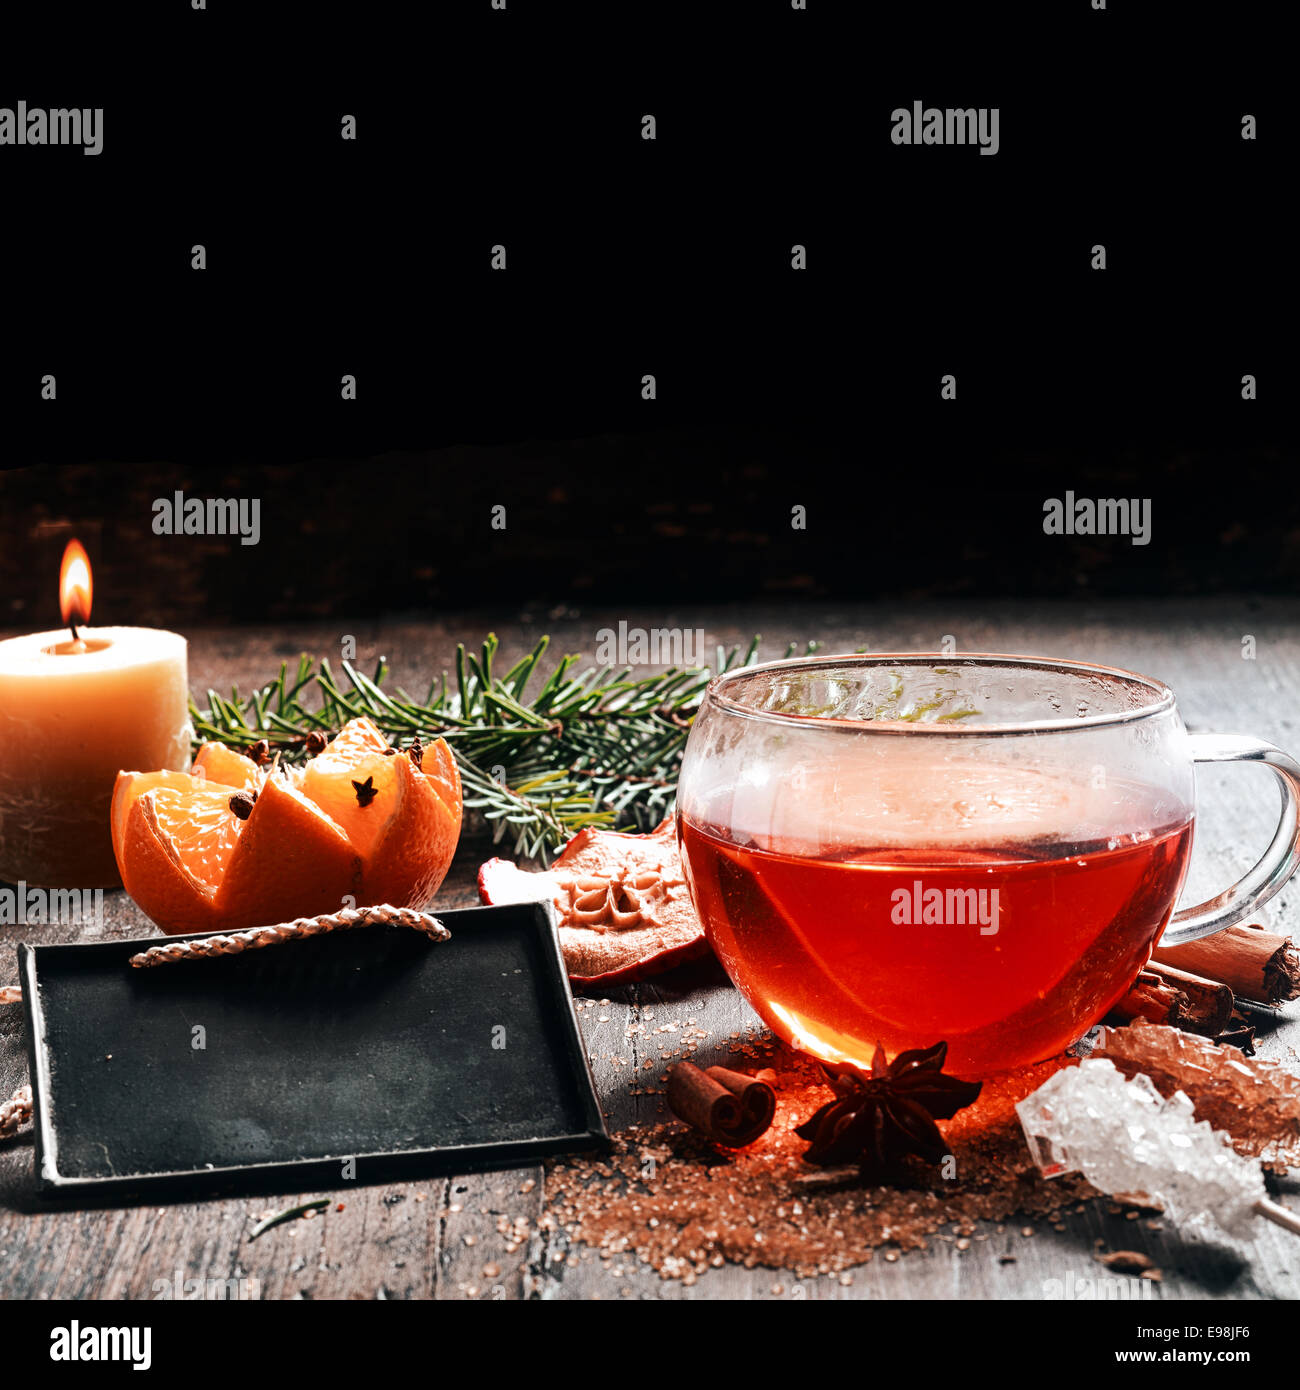 Tag pronto per i messaggi di saluto in occasione del Natale foto Design, vino rosso, arancio, candele profumate, sul tavolo di legno Foto Stock